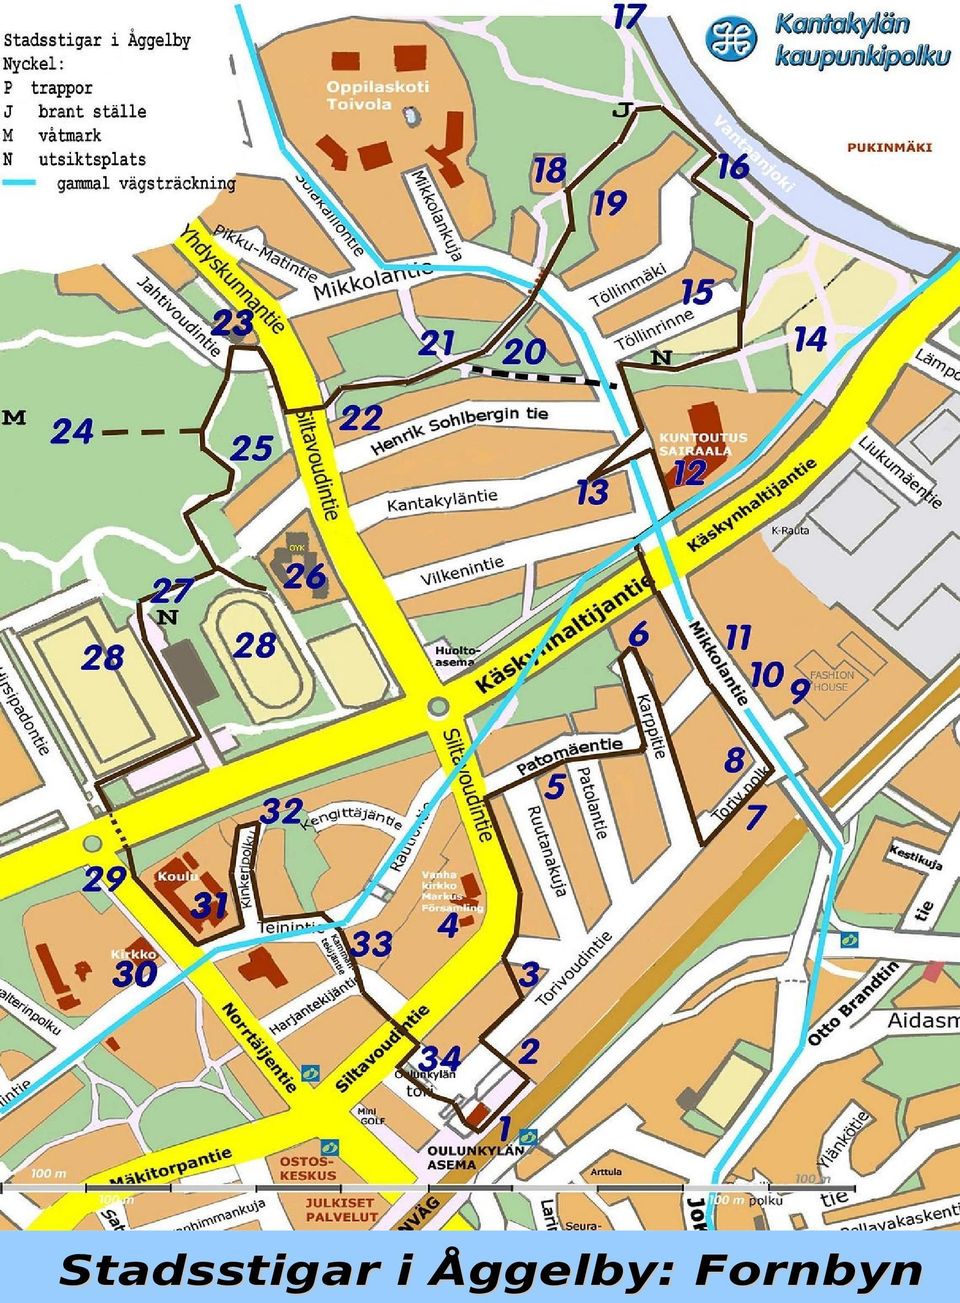 Stadsstigar i Åggelby: Fornbyn 1/18 - PDF Gratis nedladdning